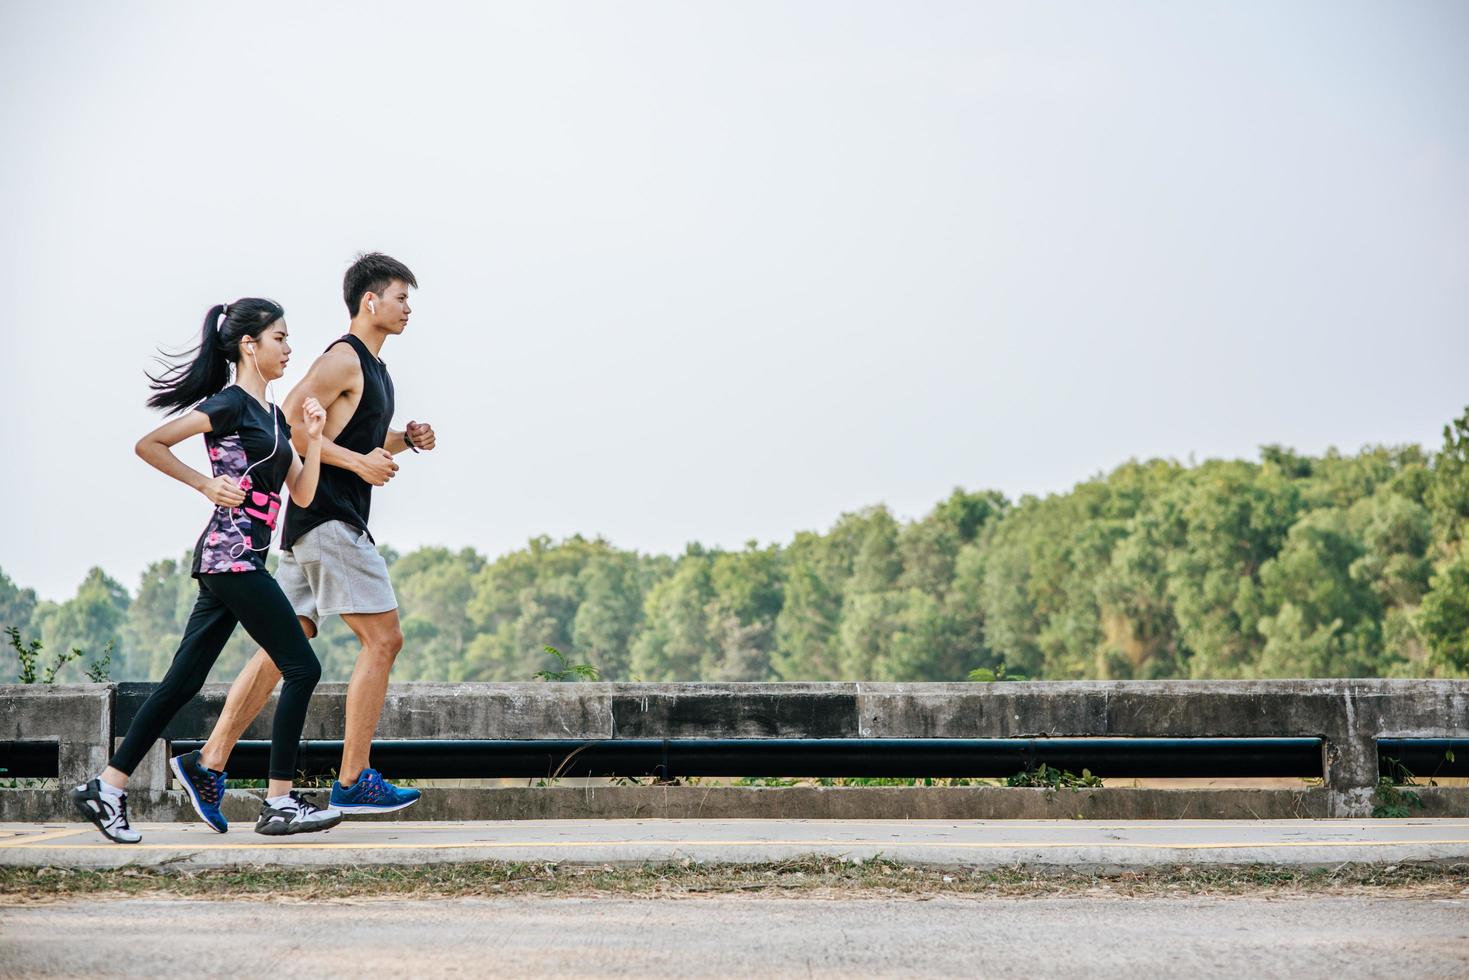 män och kvinnor tränar genom att springa. foto